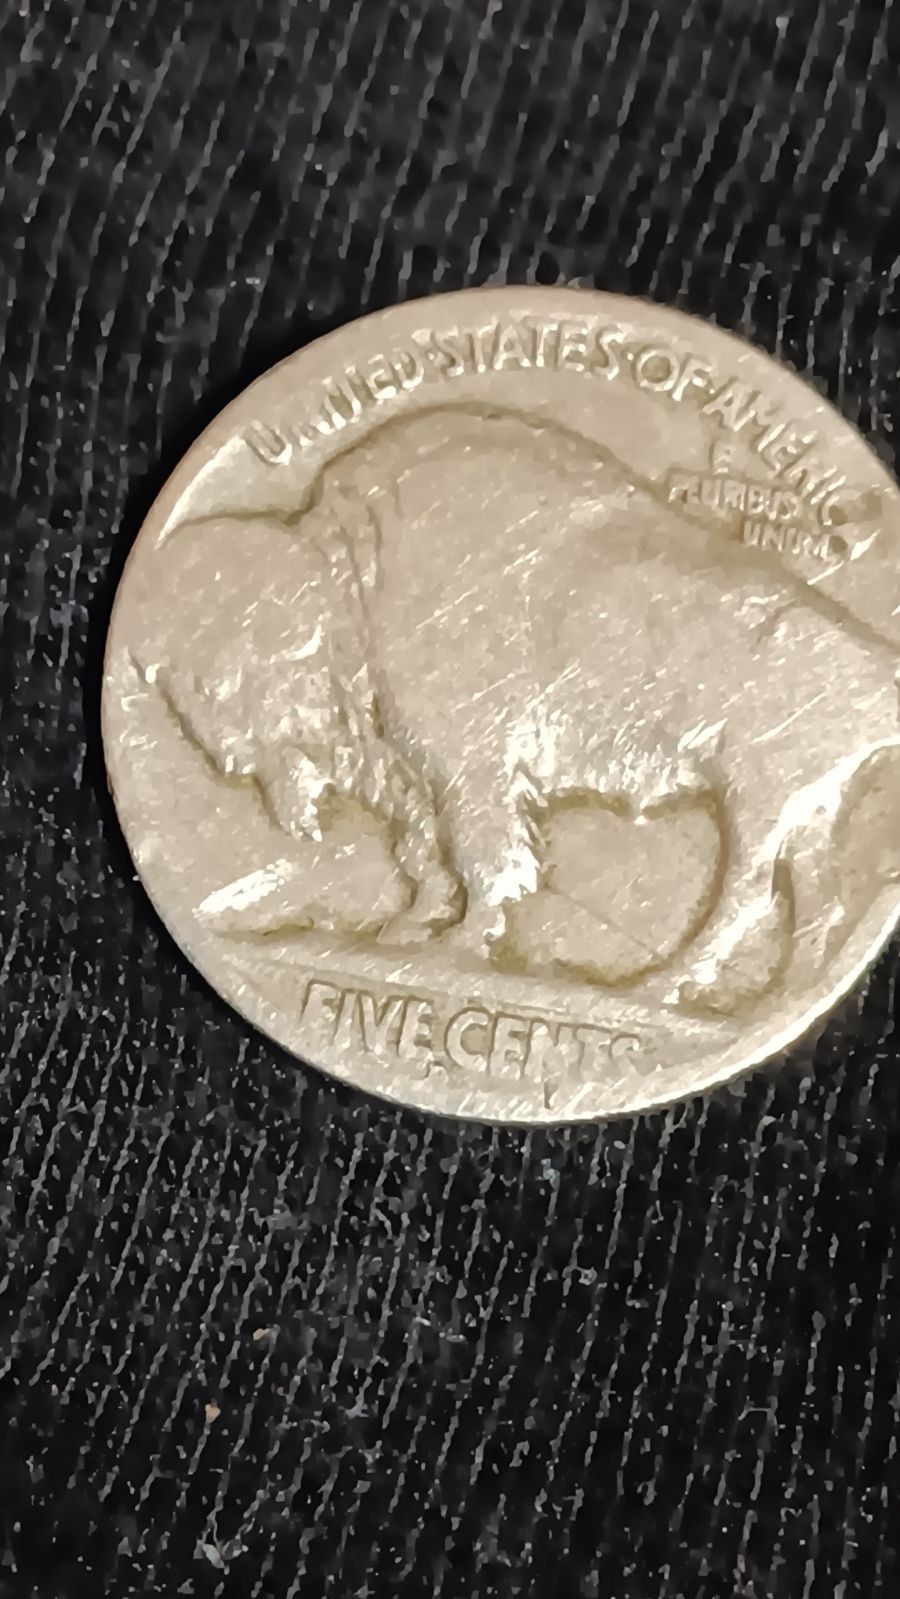 1820 Buffalo Head Nickel